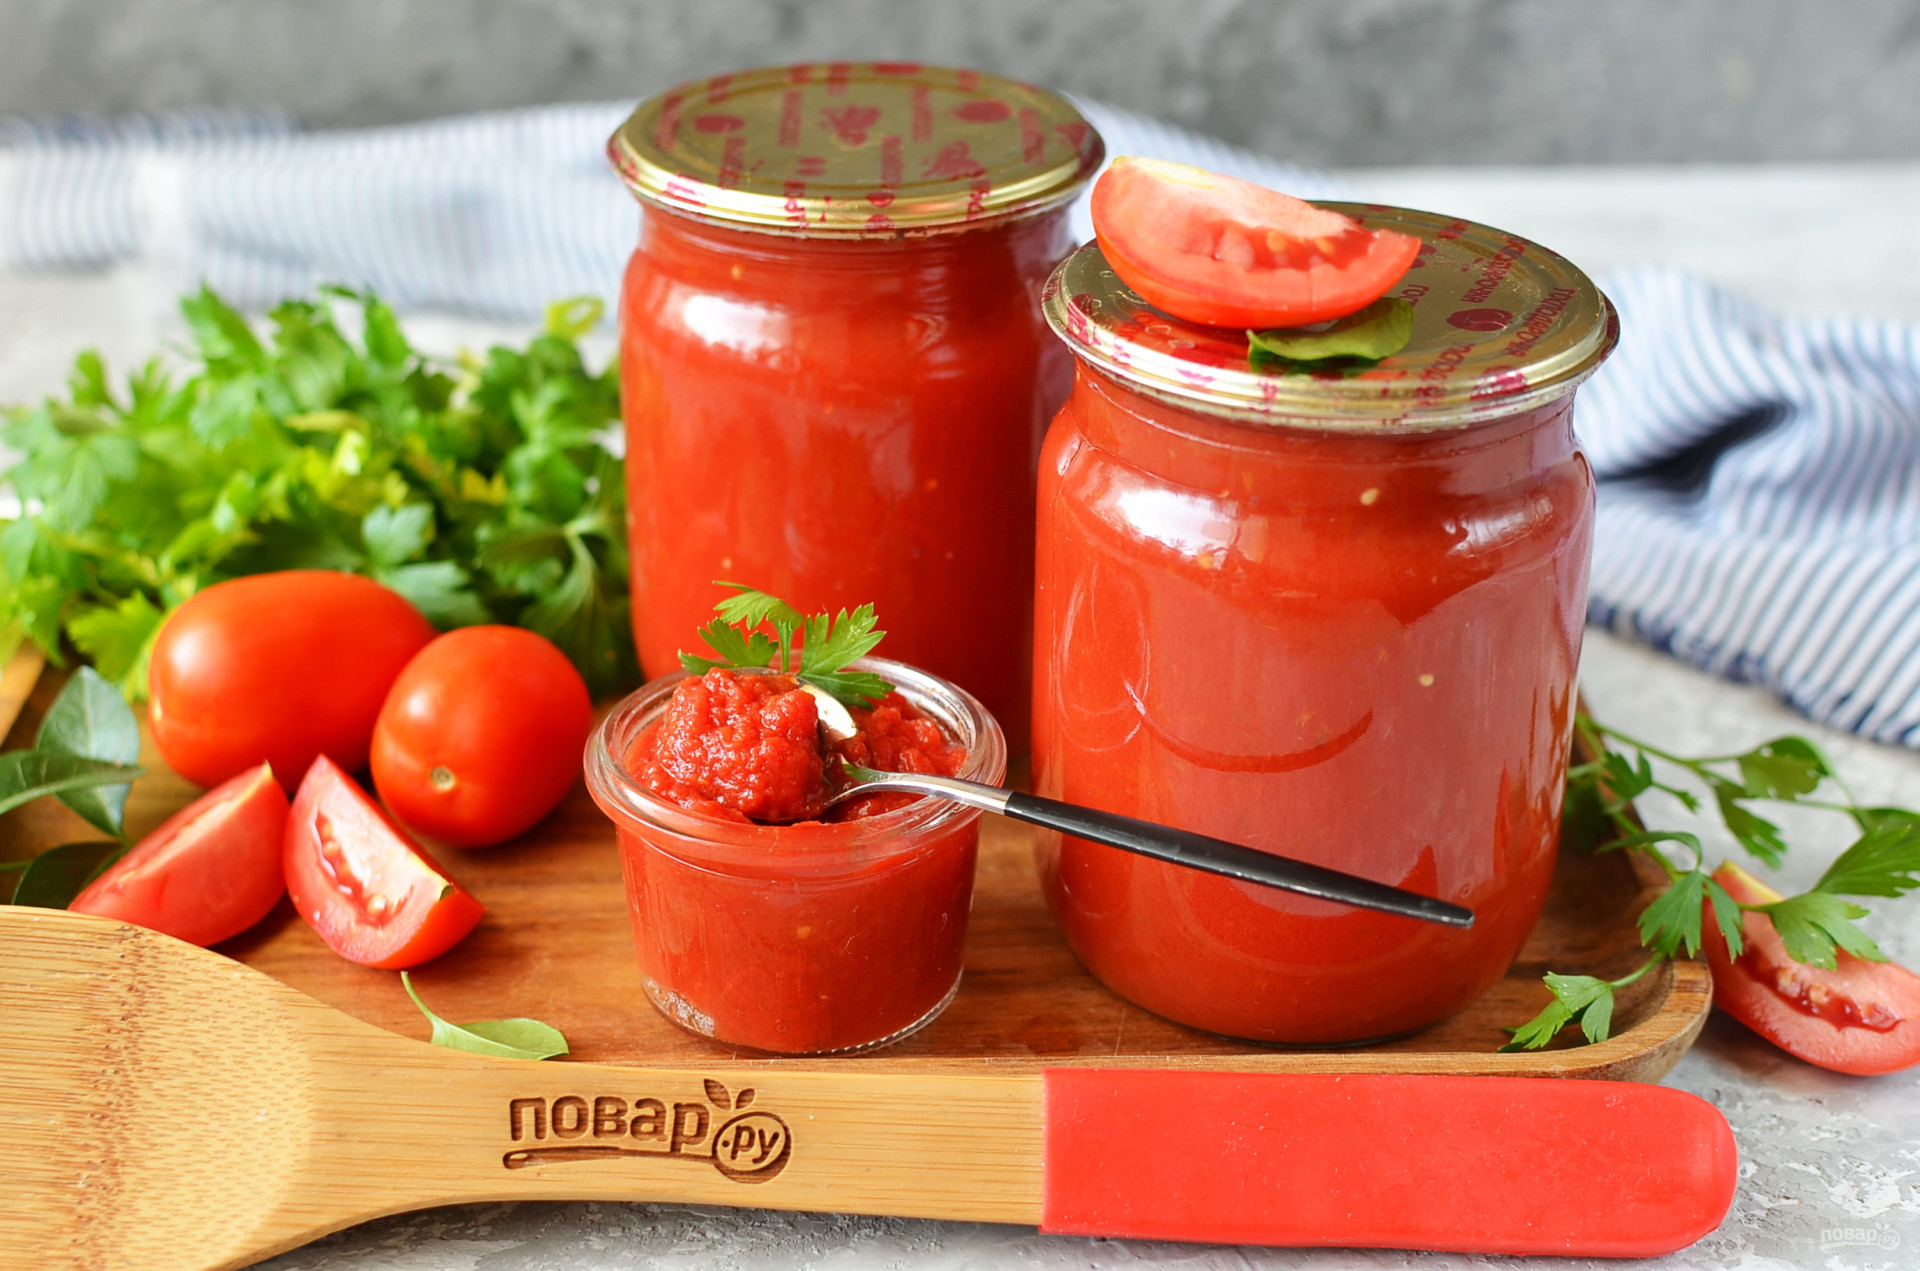 томатный соус из помидоров для пиццы в домашних условиях фото 115